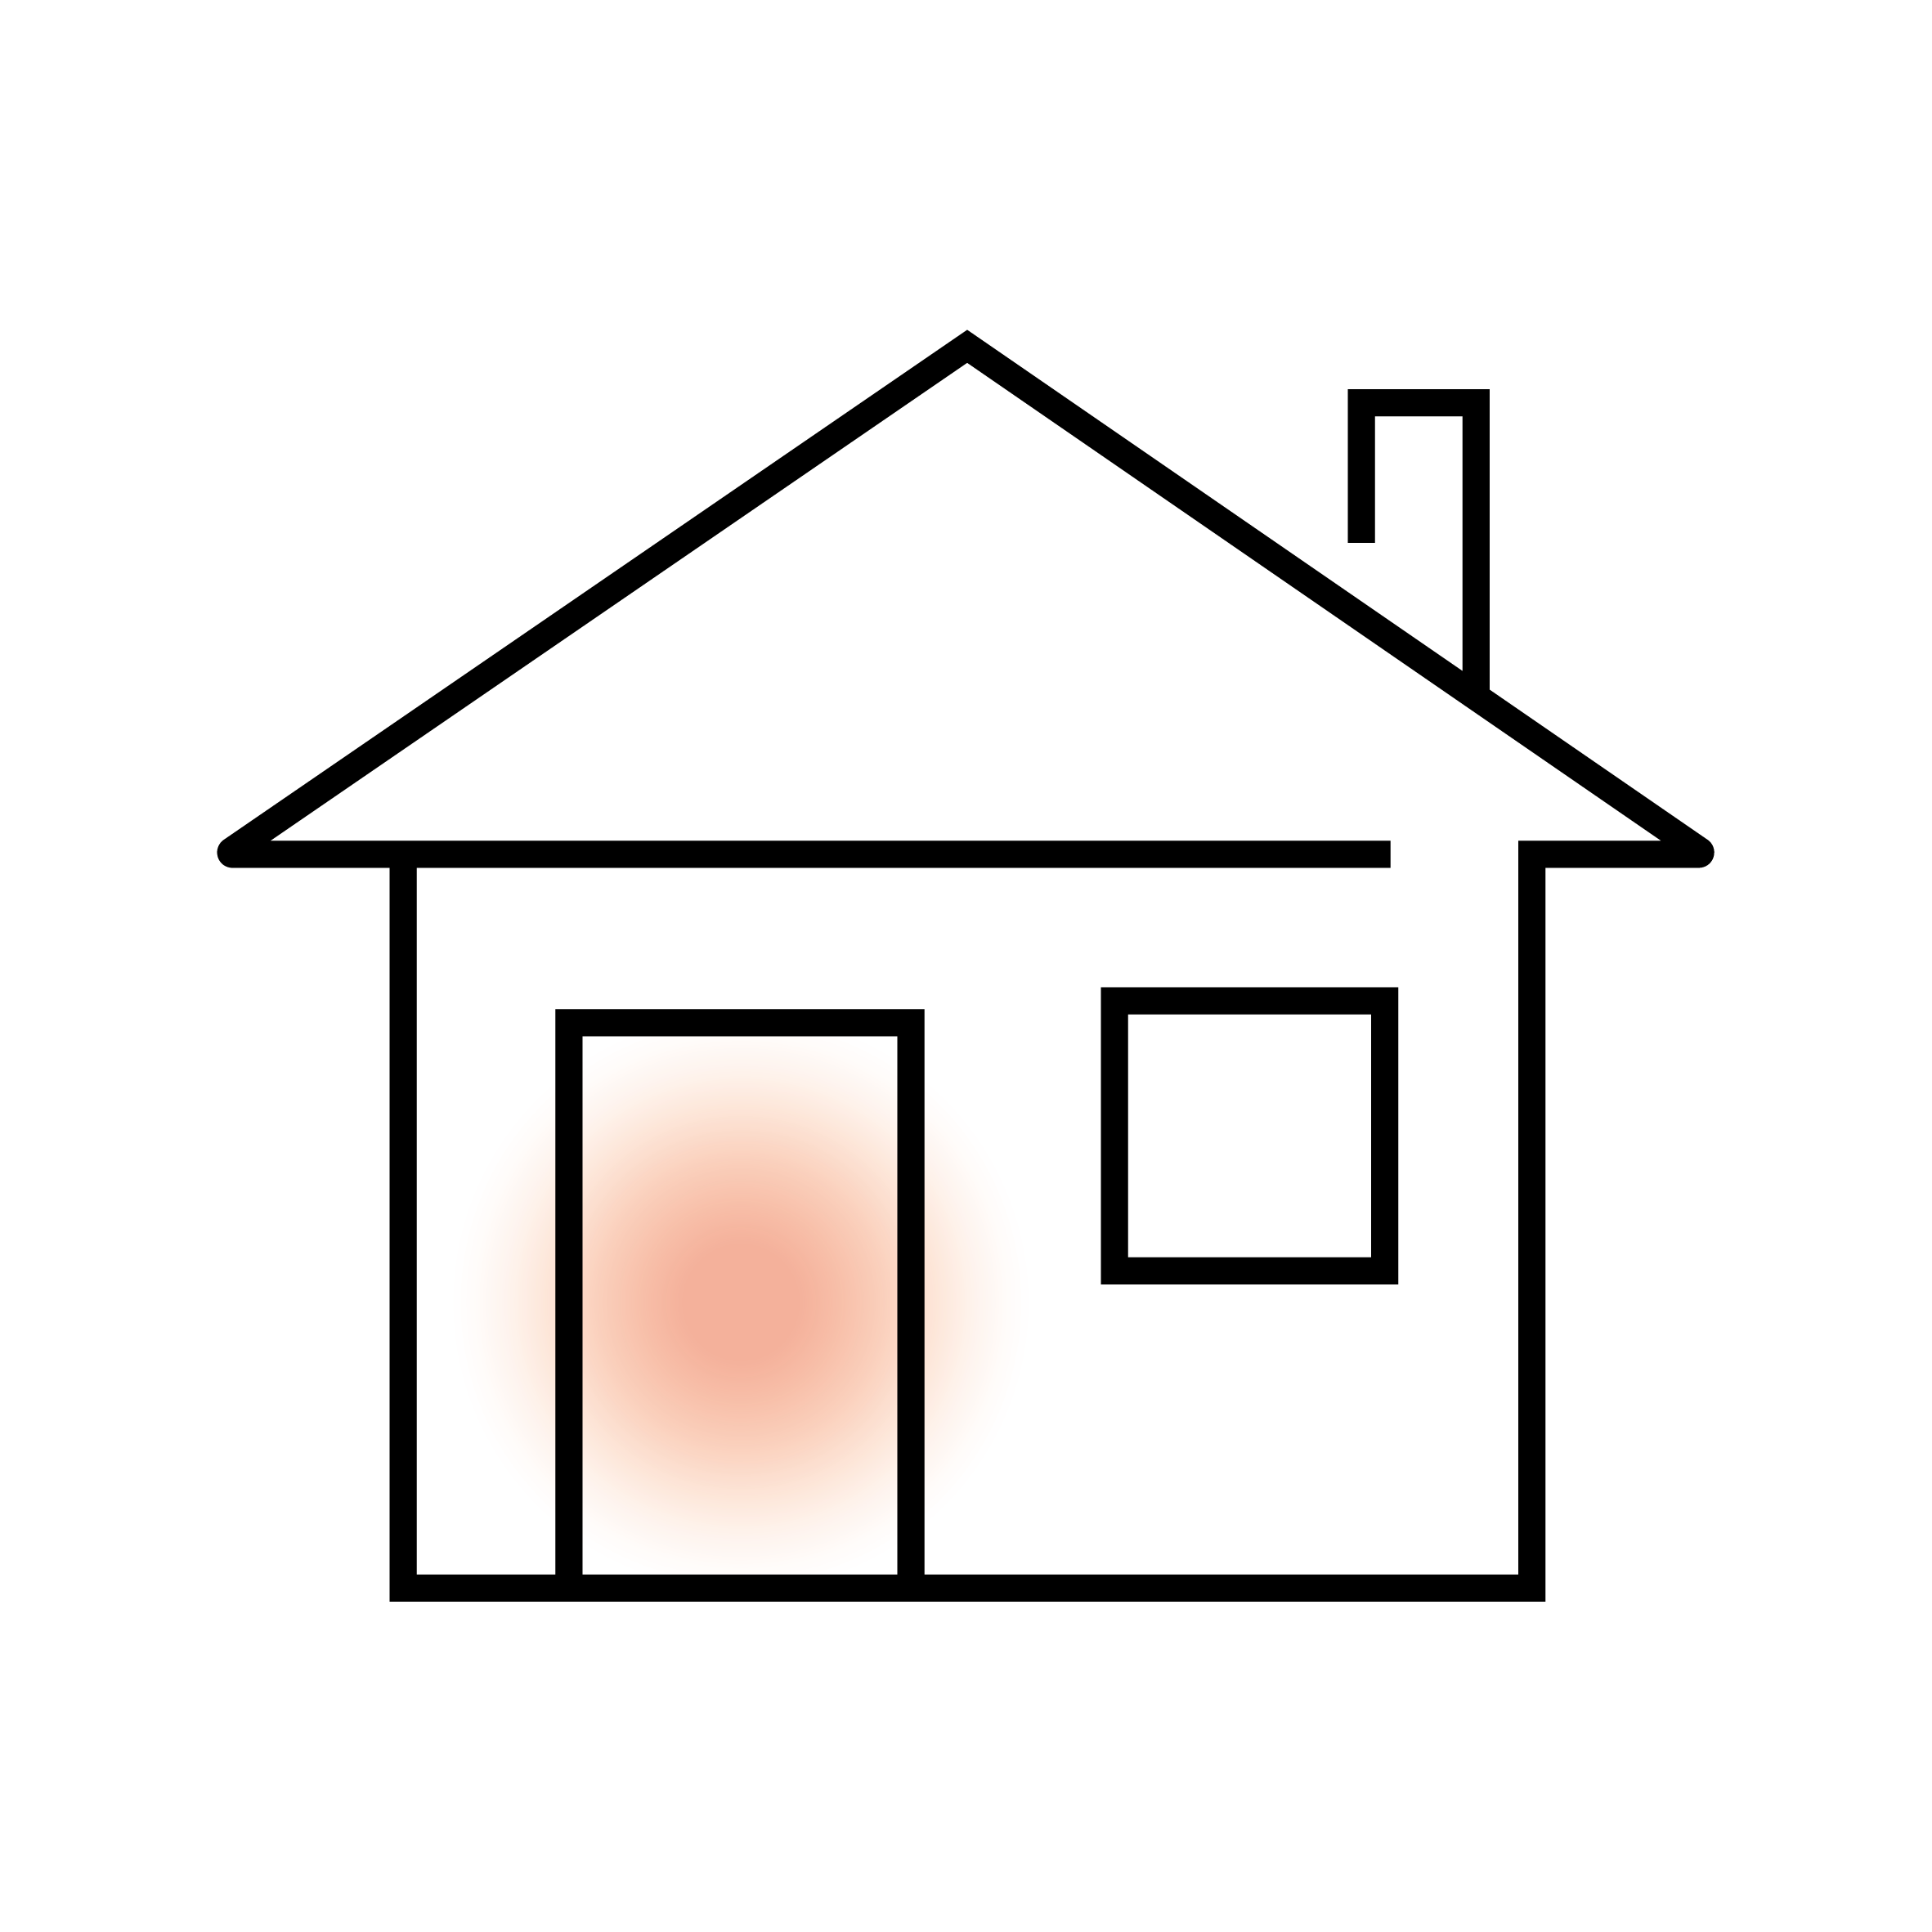 Vektorgrafik eines einfachen Hauses mit Schornstein.